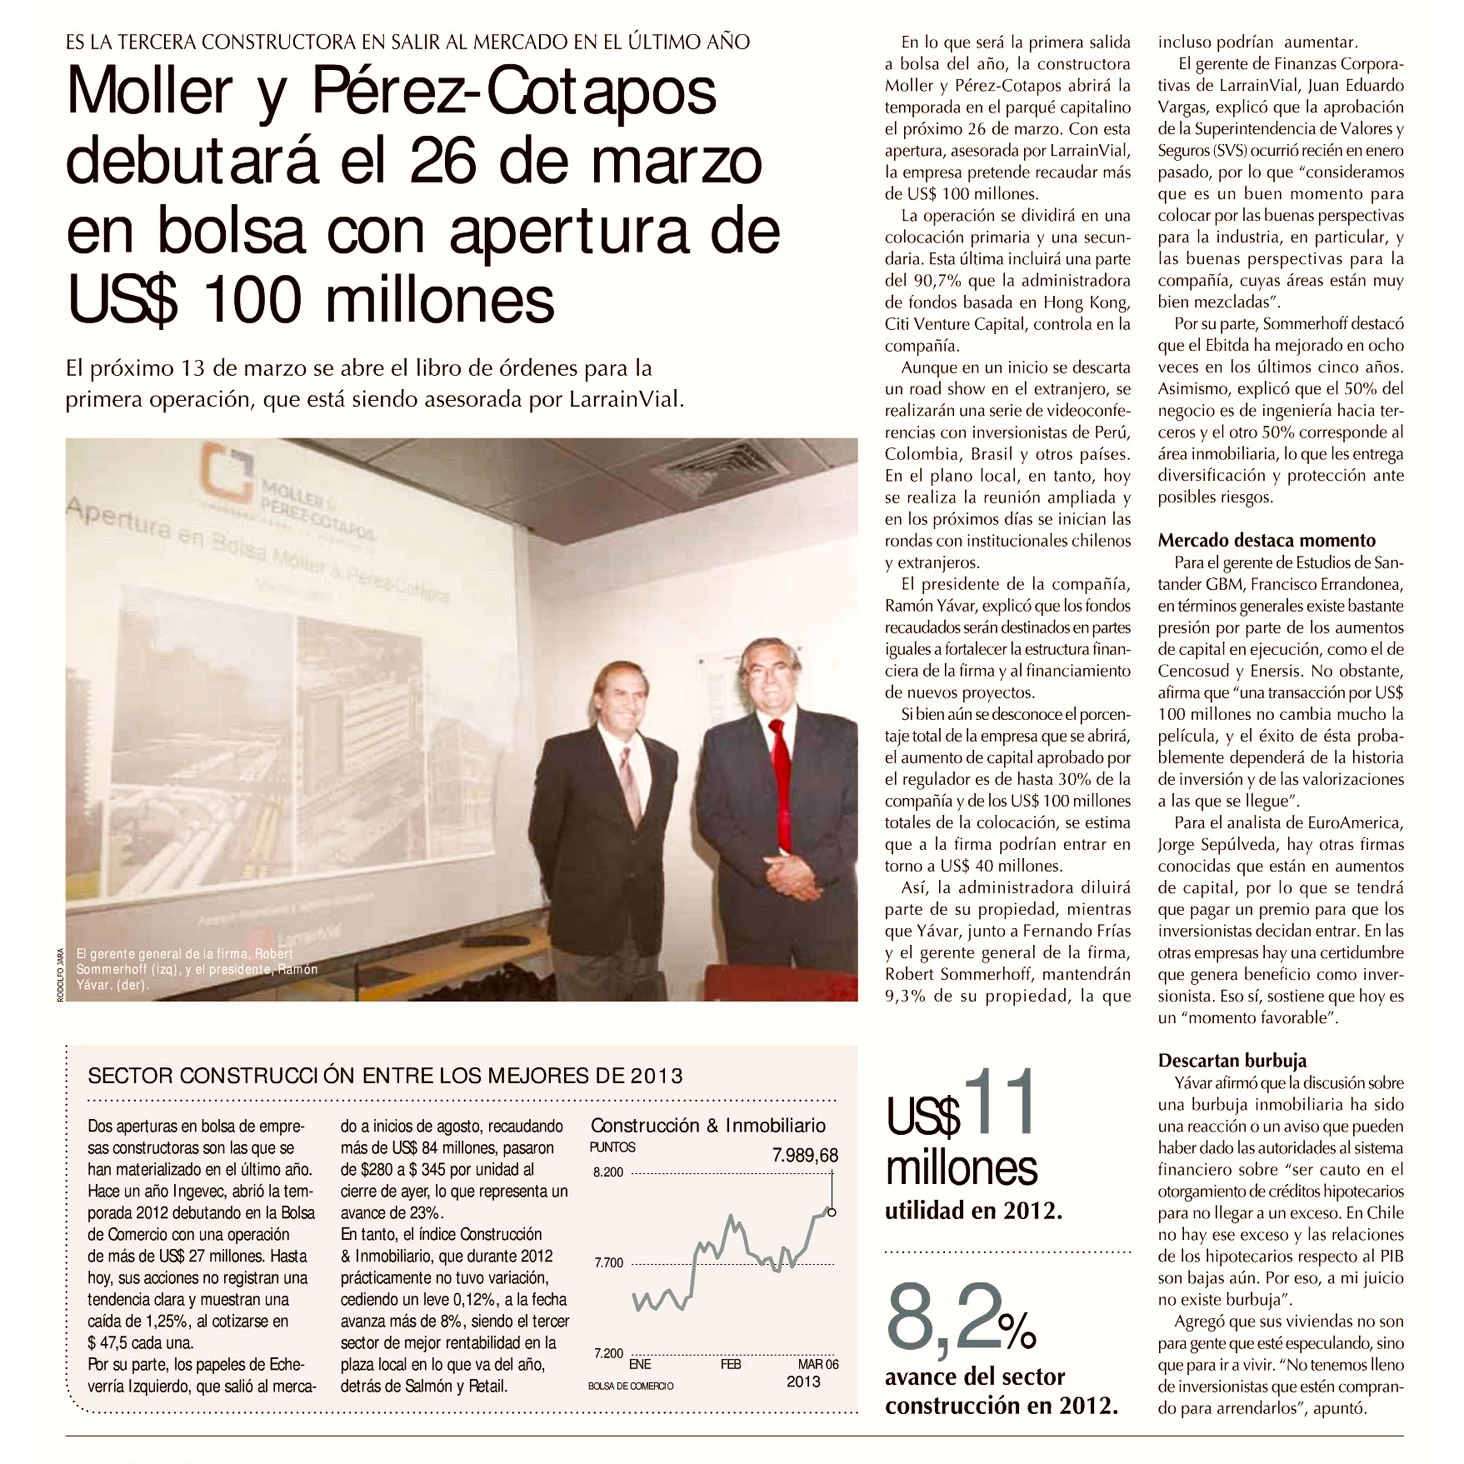 Moller y Pérez - Cotapos, debutará el 26 de marzo en bolsa con apertura de US$ 100 millones